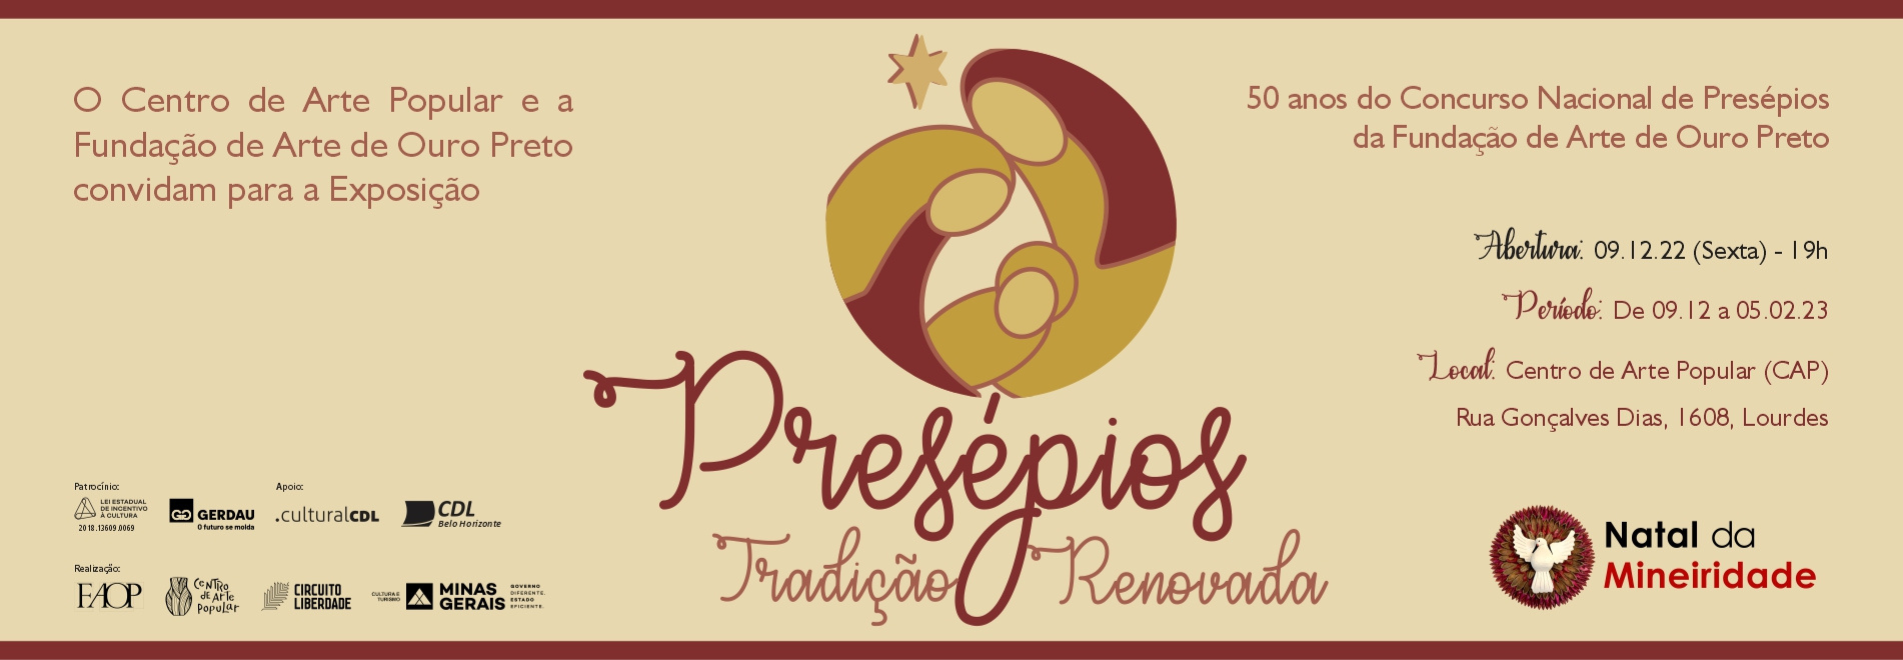 Presépios: Tradição Renovada - 50 anos do Concurso Nacional de Presépios da Fundação de Arte de Ouro Preto